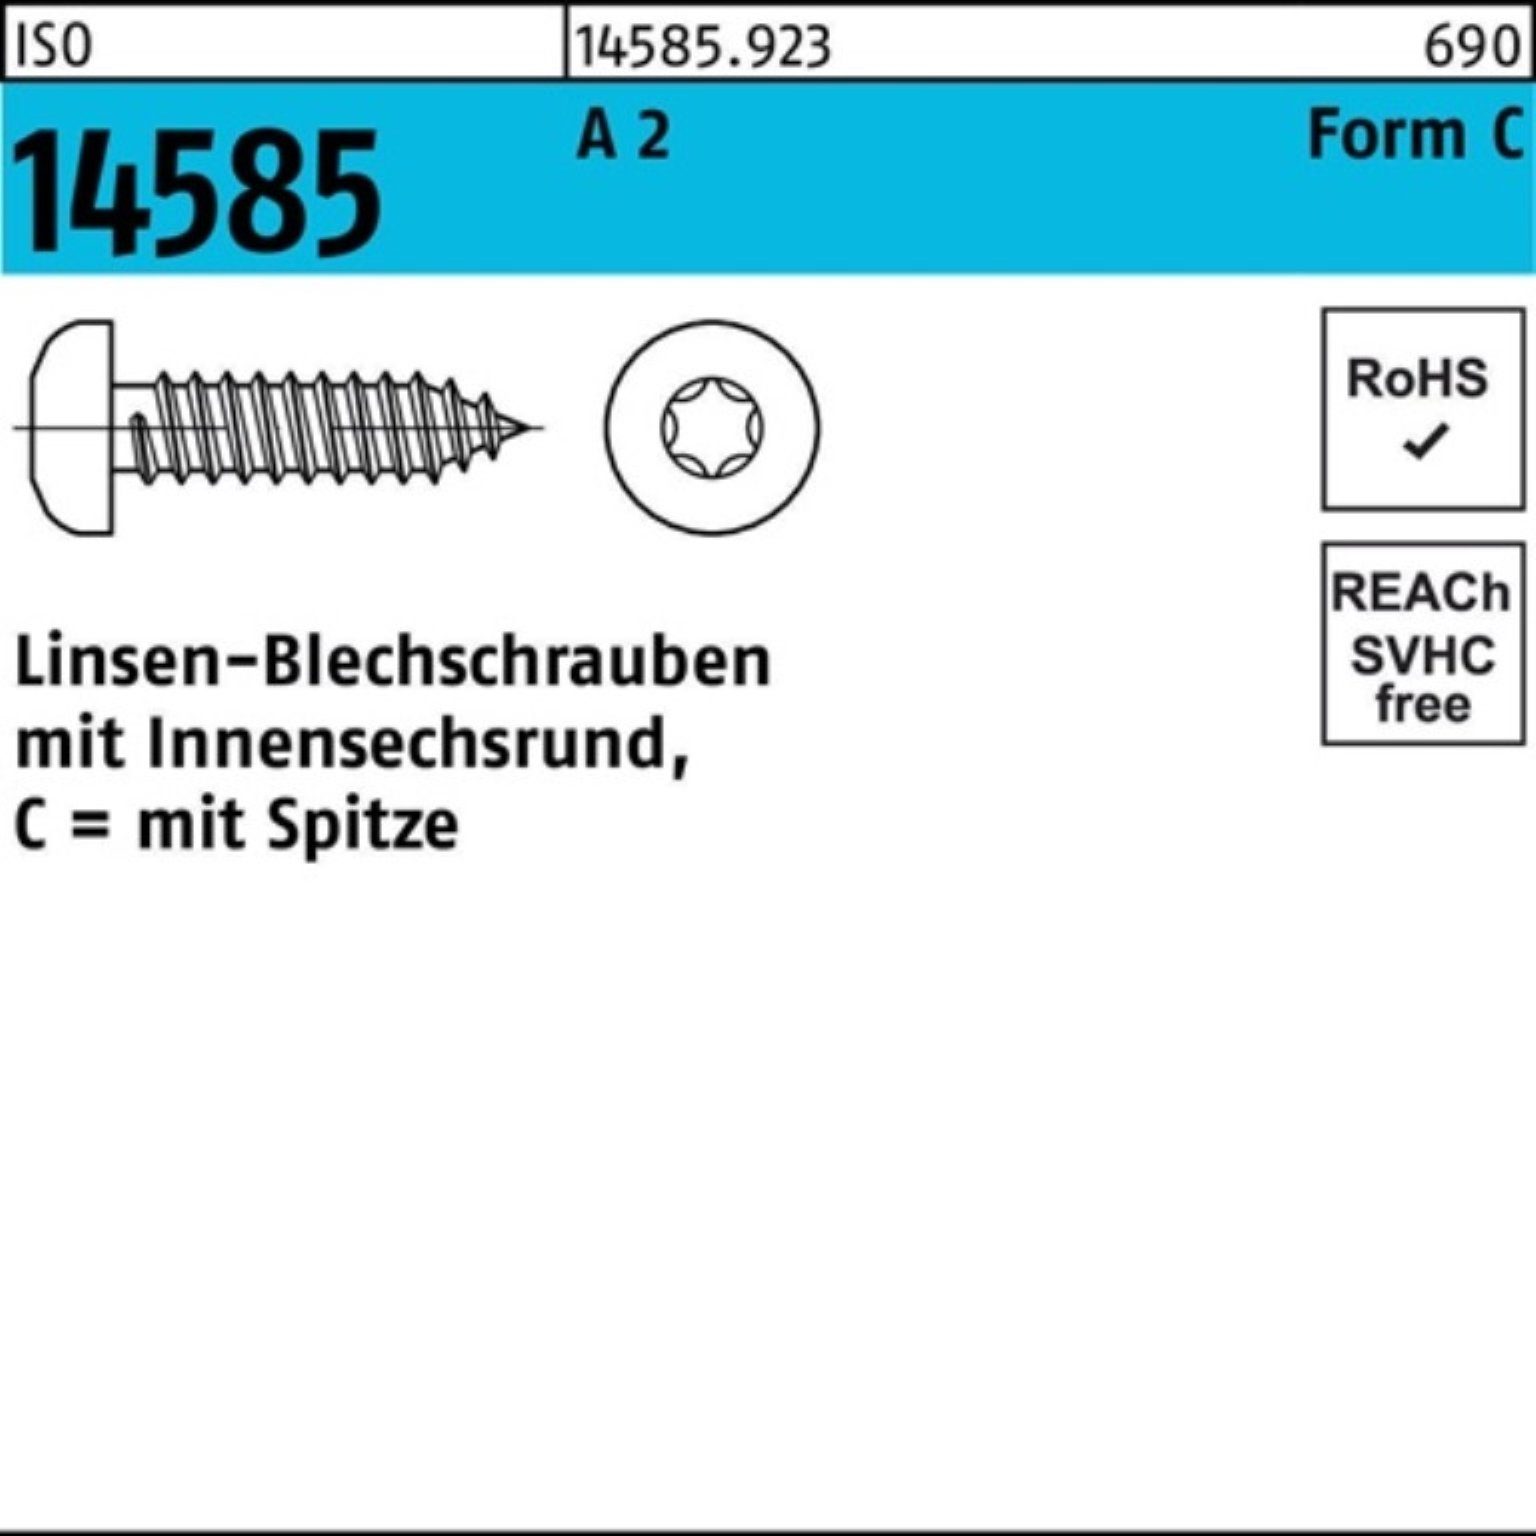 Blechschraube 16 3,9x Linsenblechschraube 2 T15 14585 A Reyher 1000 Pack -C ISR ISO 1000er